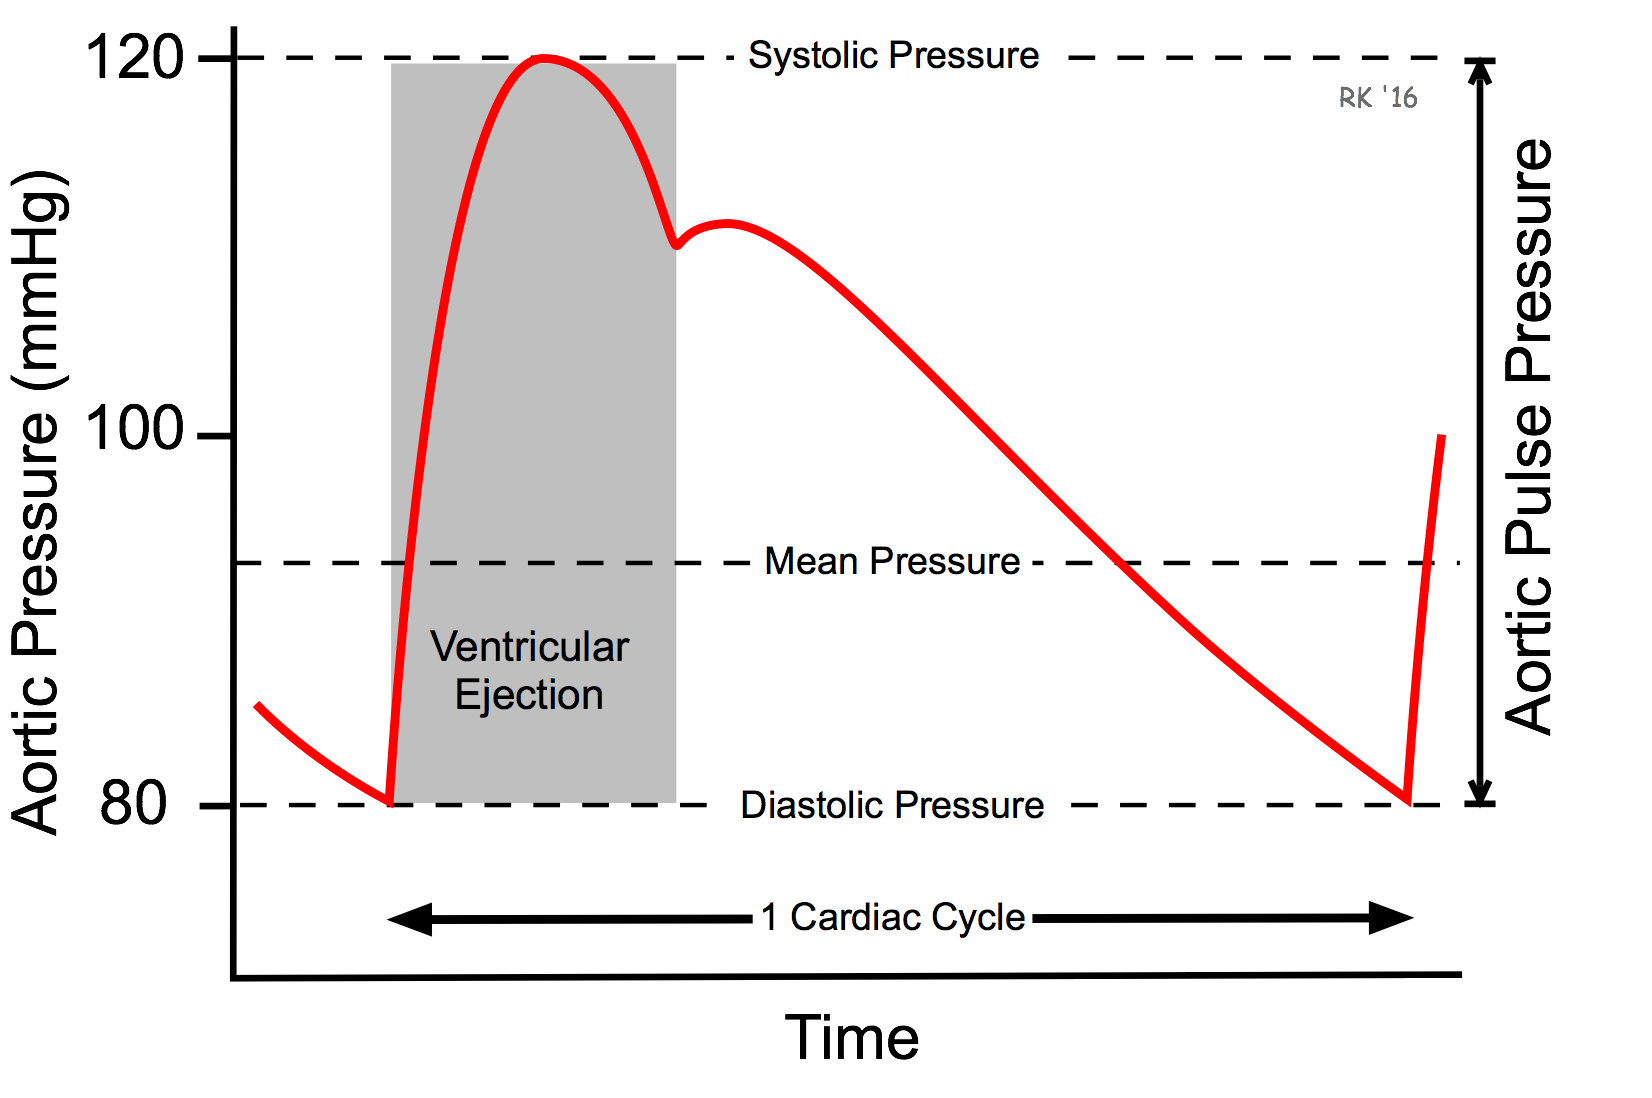 Aortic pulse pressure